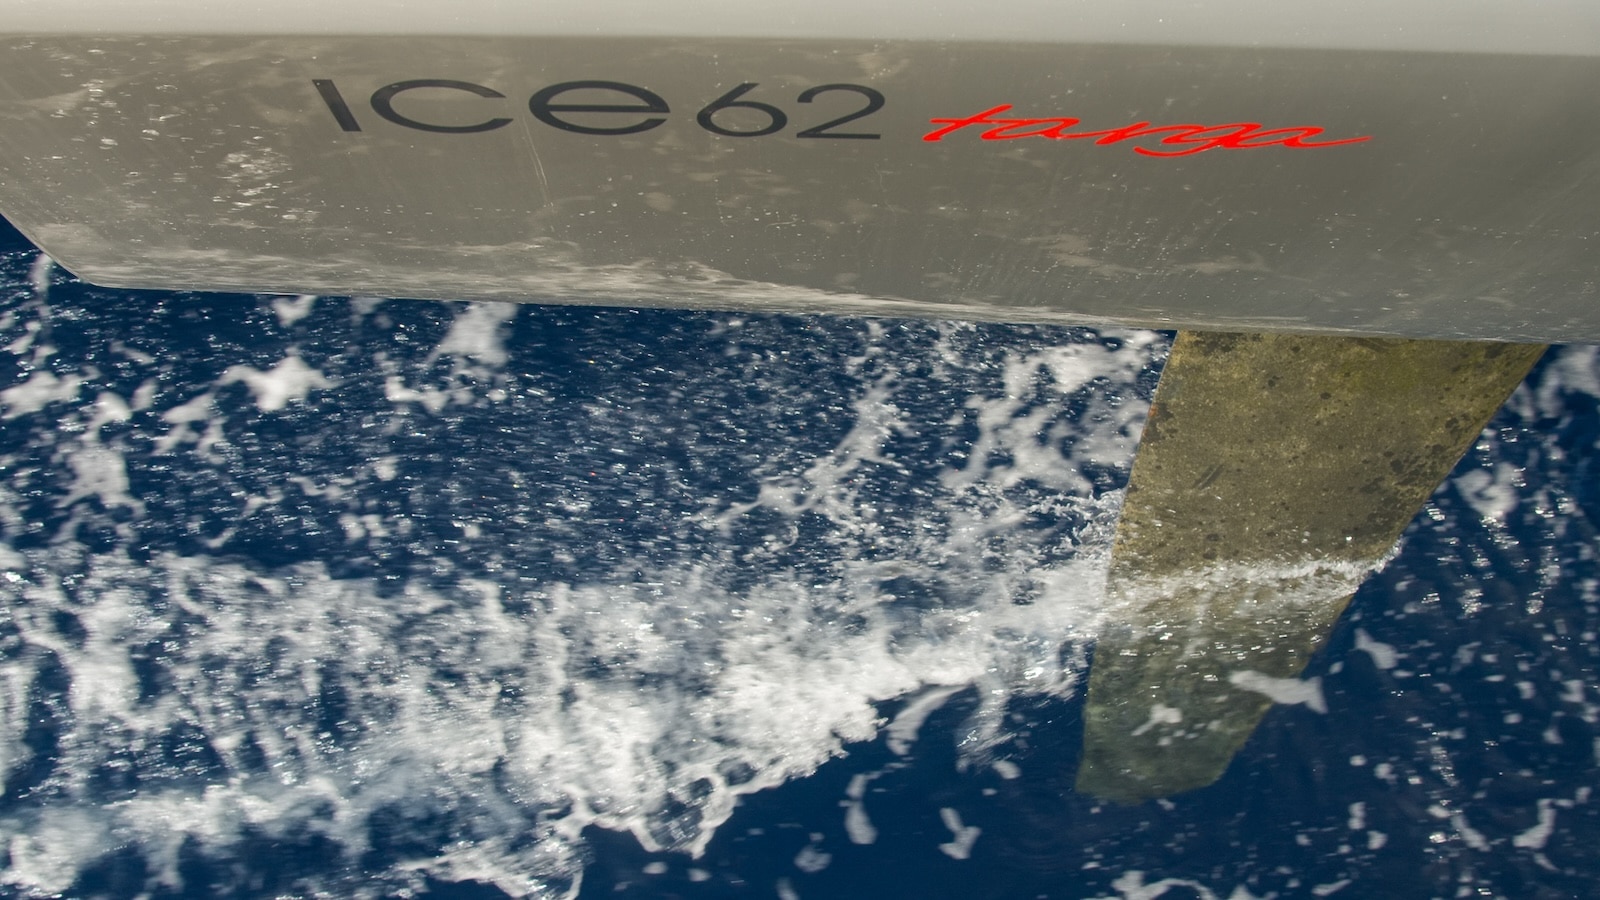 Un armatore e la sua barca: ICE 62 Targa, personalizzata per lunghe crociere in solitaria.